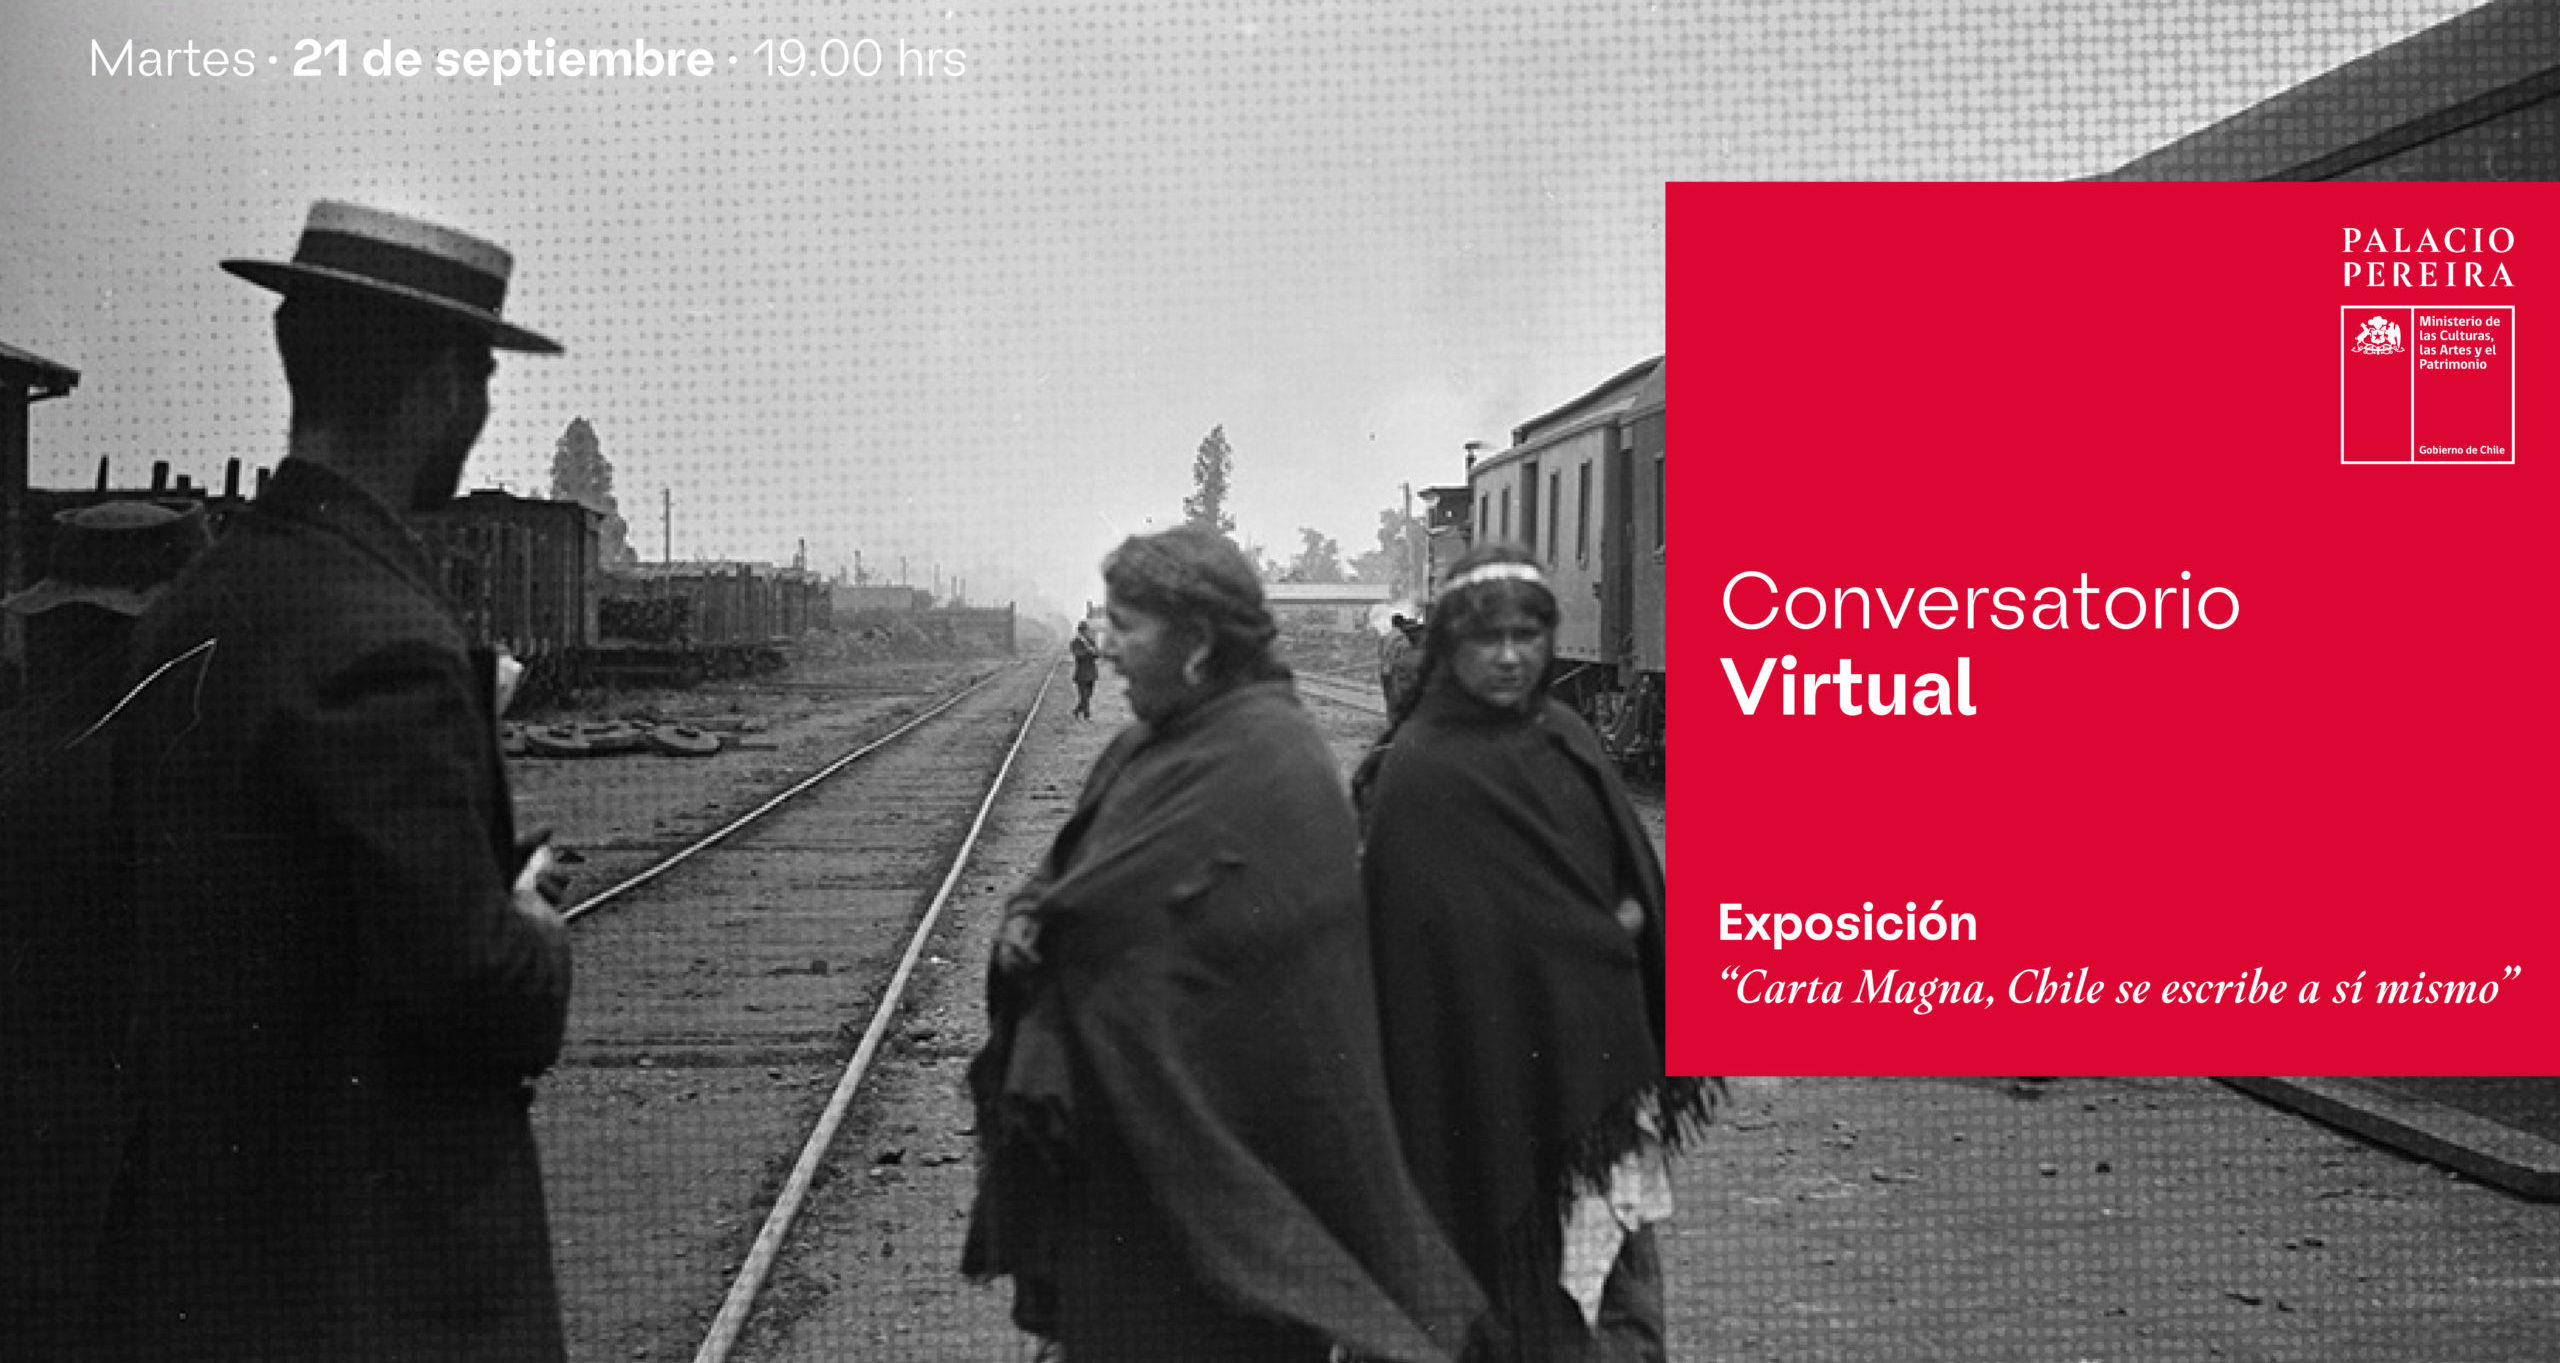 Conversatorio virtual exposición “Carta Magna”